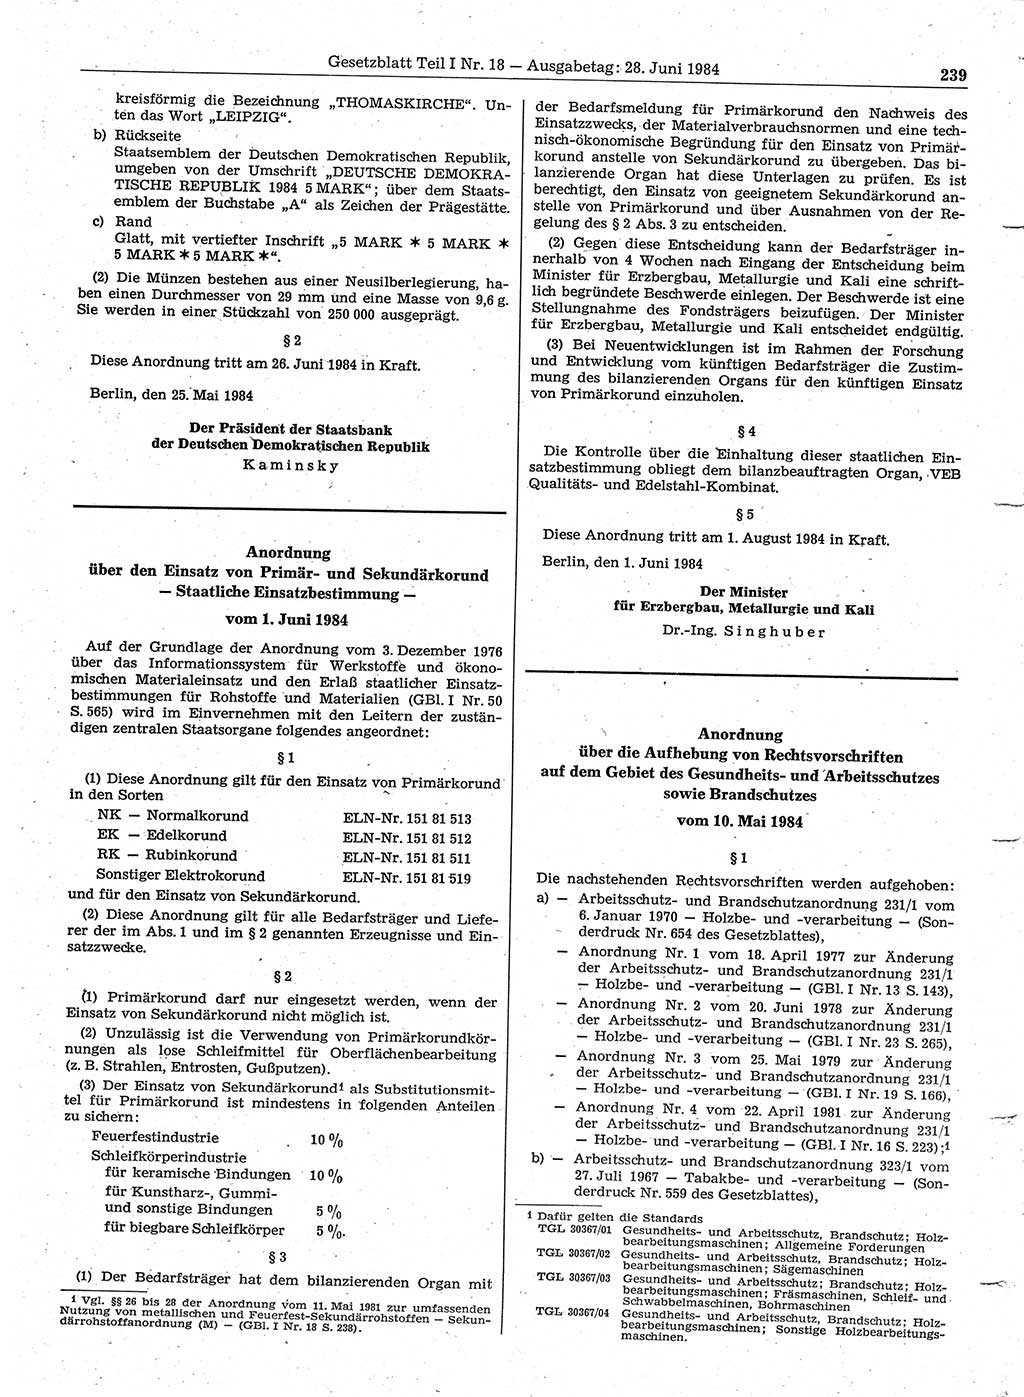 Gesetzblatt (GBl.) der Deutschen Demokratischen Republik (DDR) Teil Ⅰ 1984, Seite 239 (GBl. DDR Ⅰ 1984, S. 239)